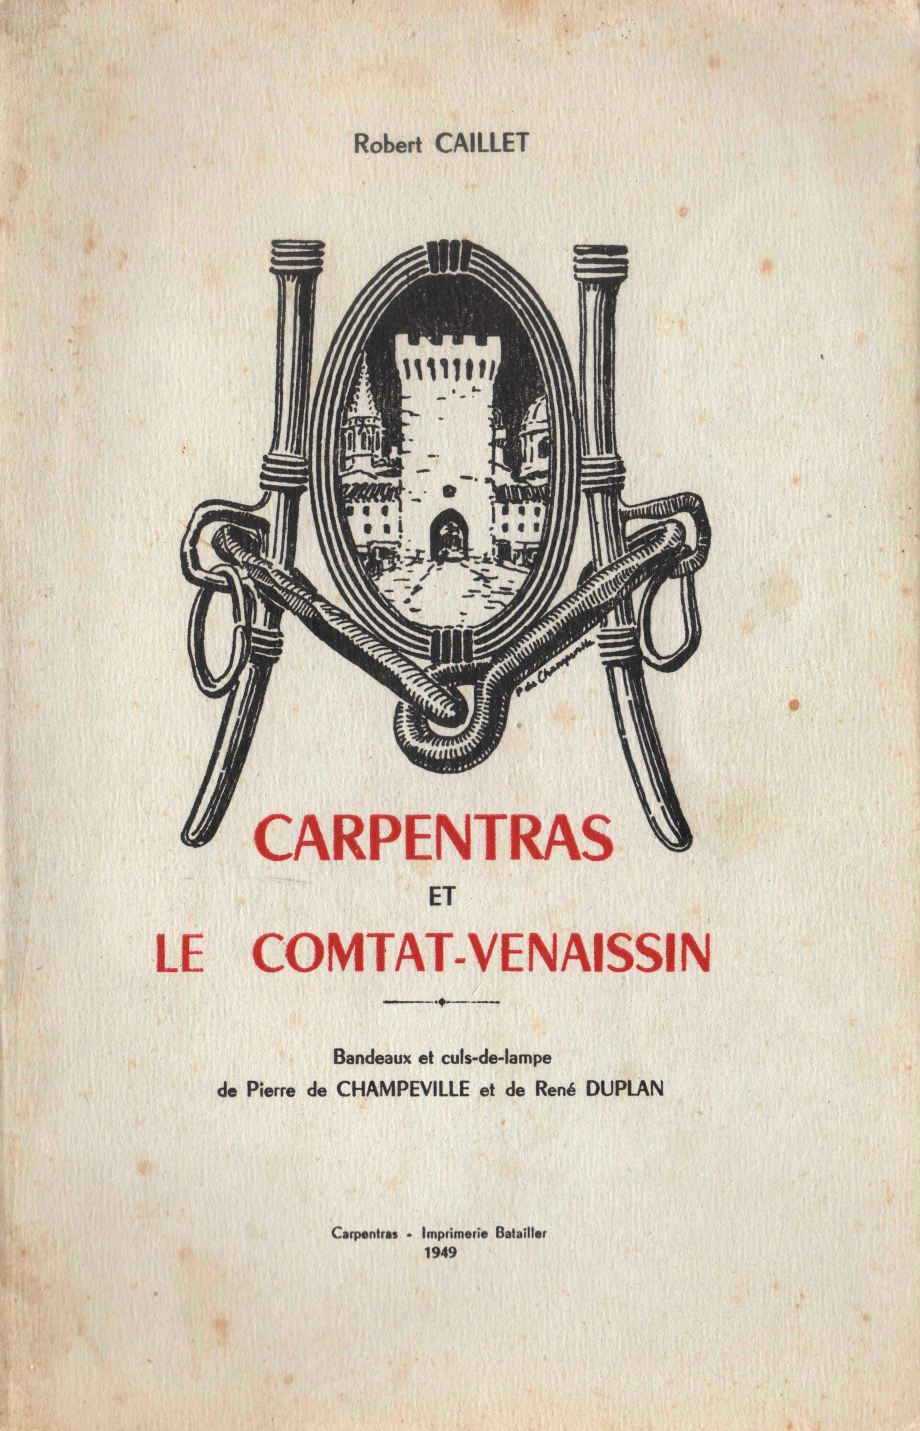 1949_carpentras_caillet.jpg